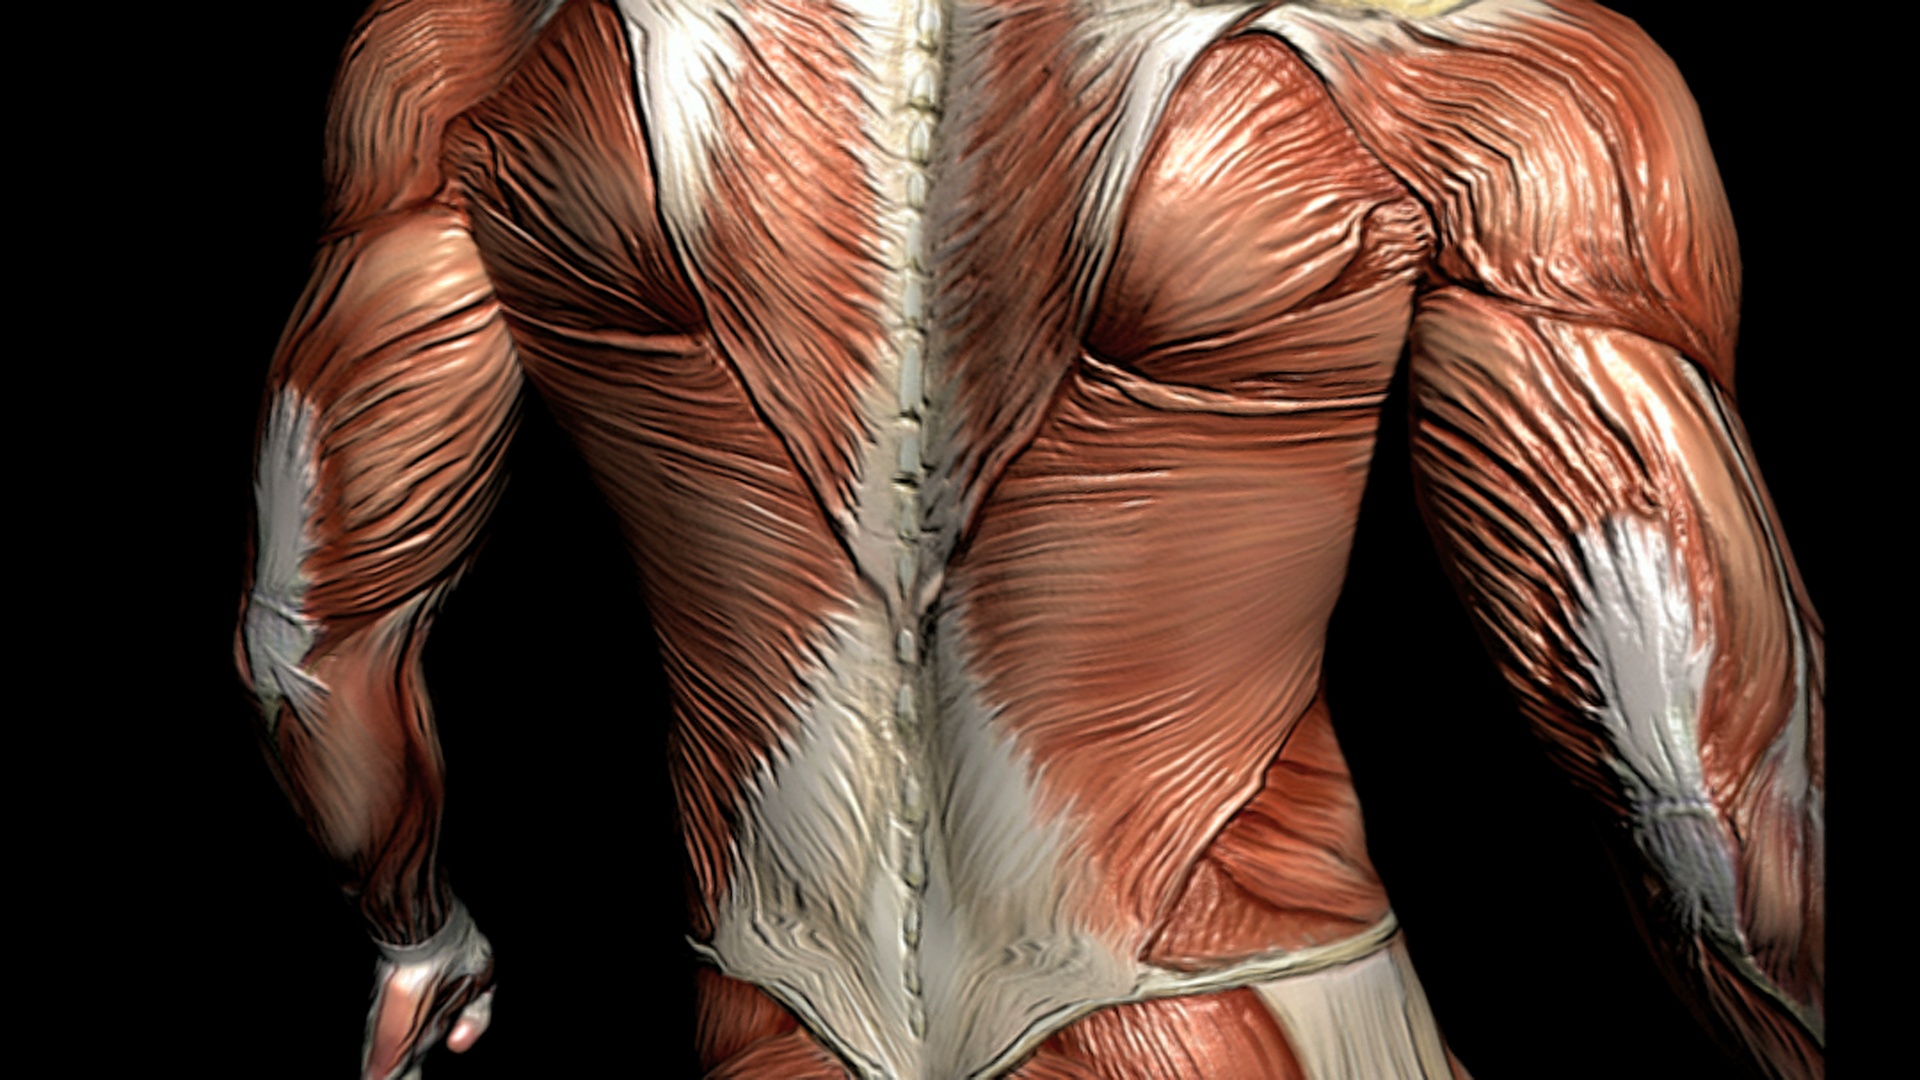 描绘男性肌肉系统的动画。镜头向上移动，在身体周围旋转，显示各种肌肉的细节，然后缩小，显示完整的肌肉系统。视频素材